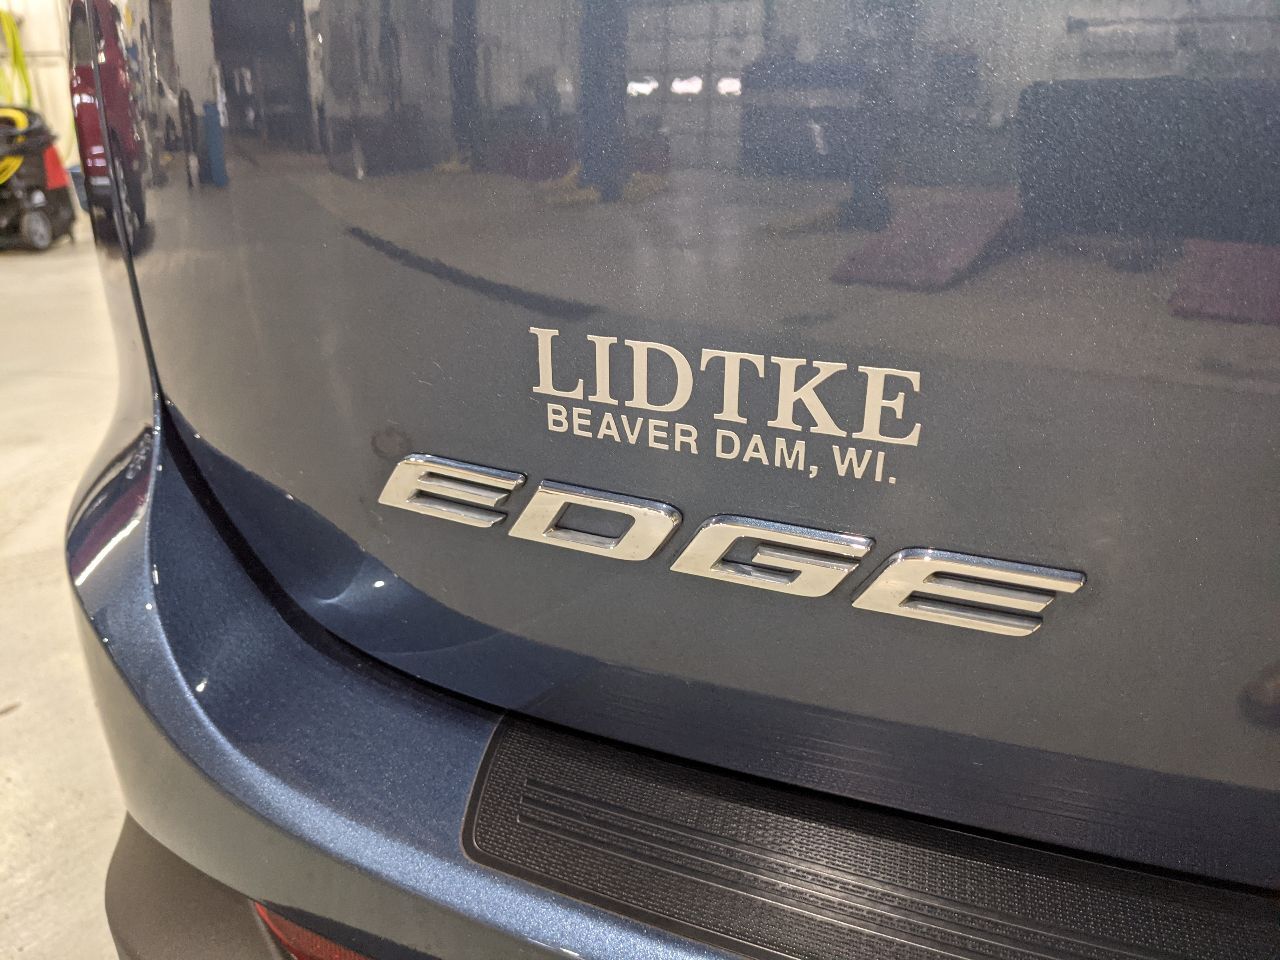 2018 Ford Edge